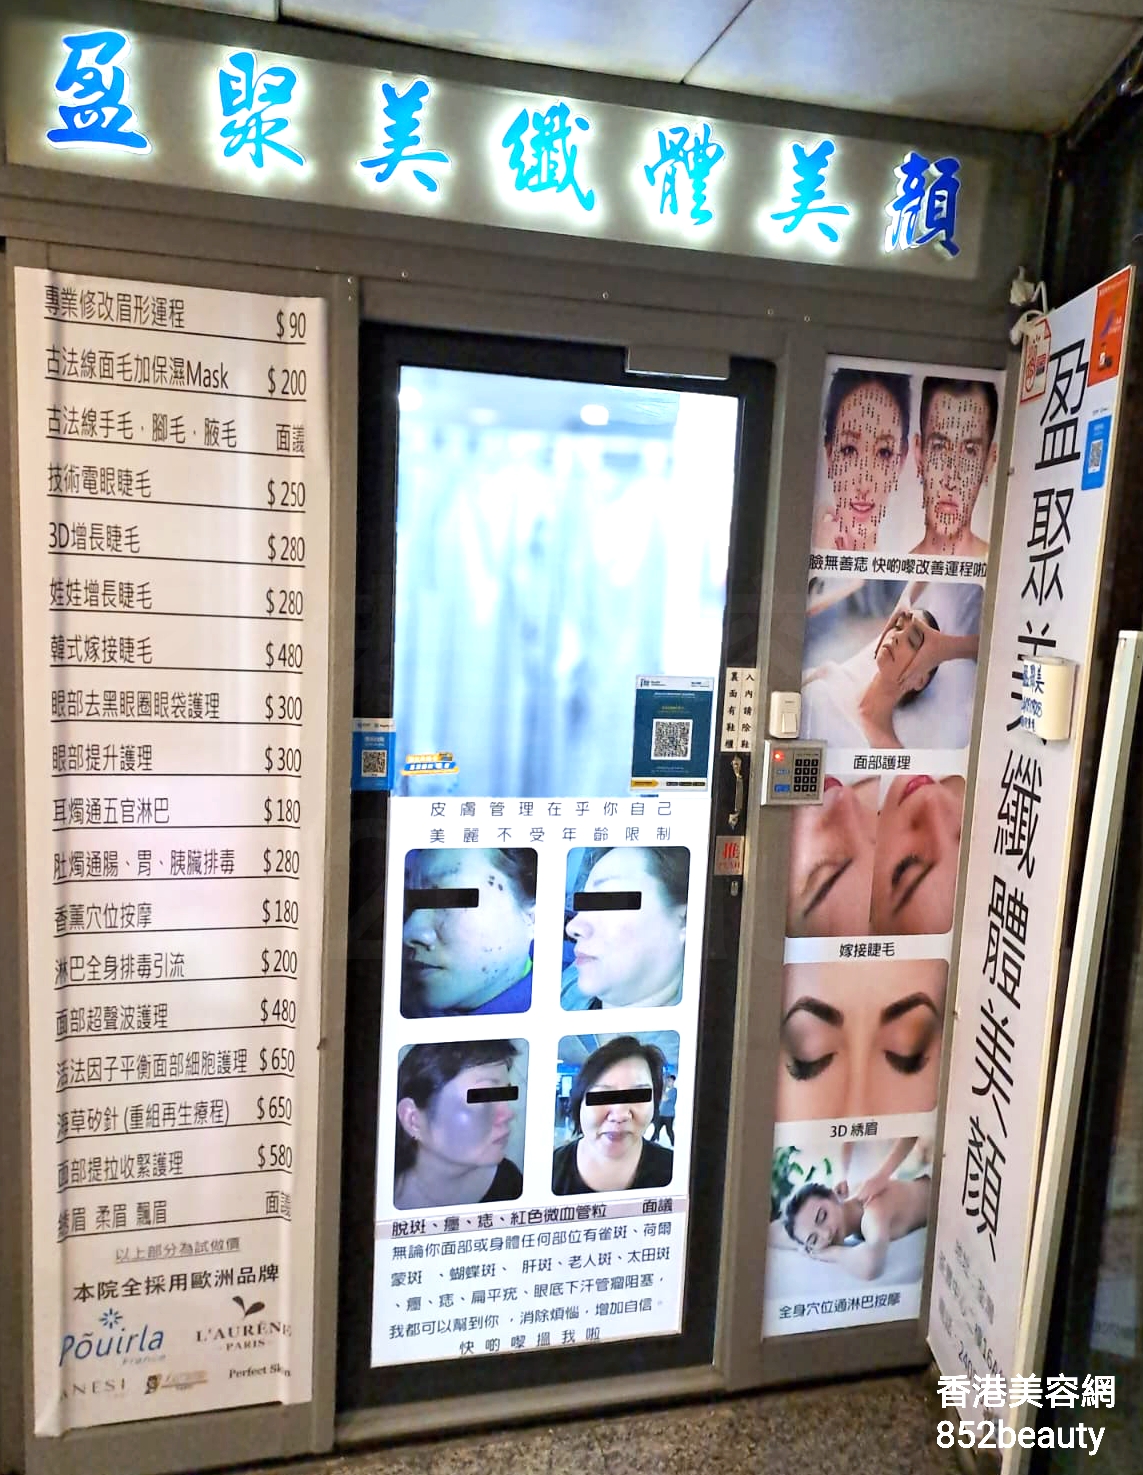 香港美容網 Hong Kong Beauty Salon 美容院 / 美容師: 盈聚美纖體美顏中心